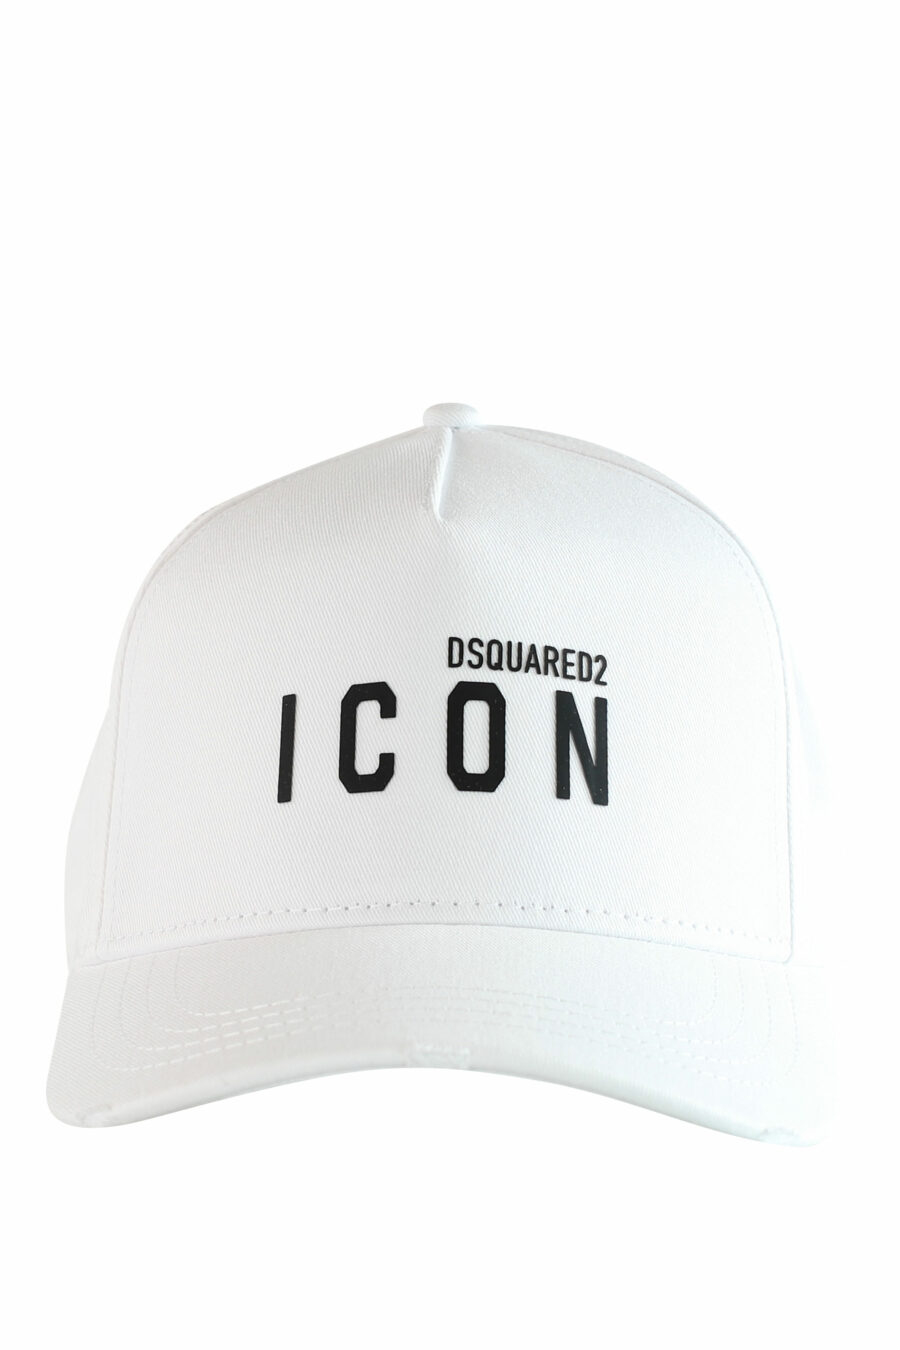 Gorra blanca con doble logo "icon" - IMG 1232